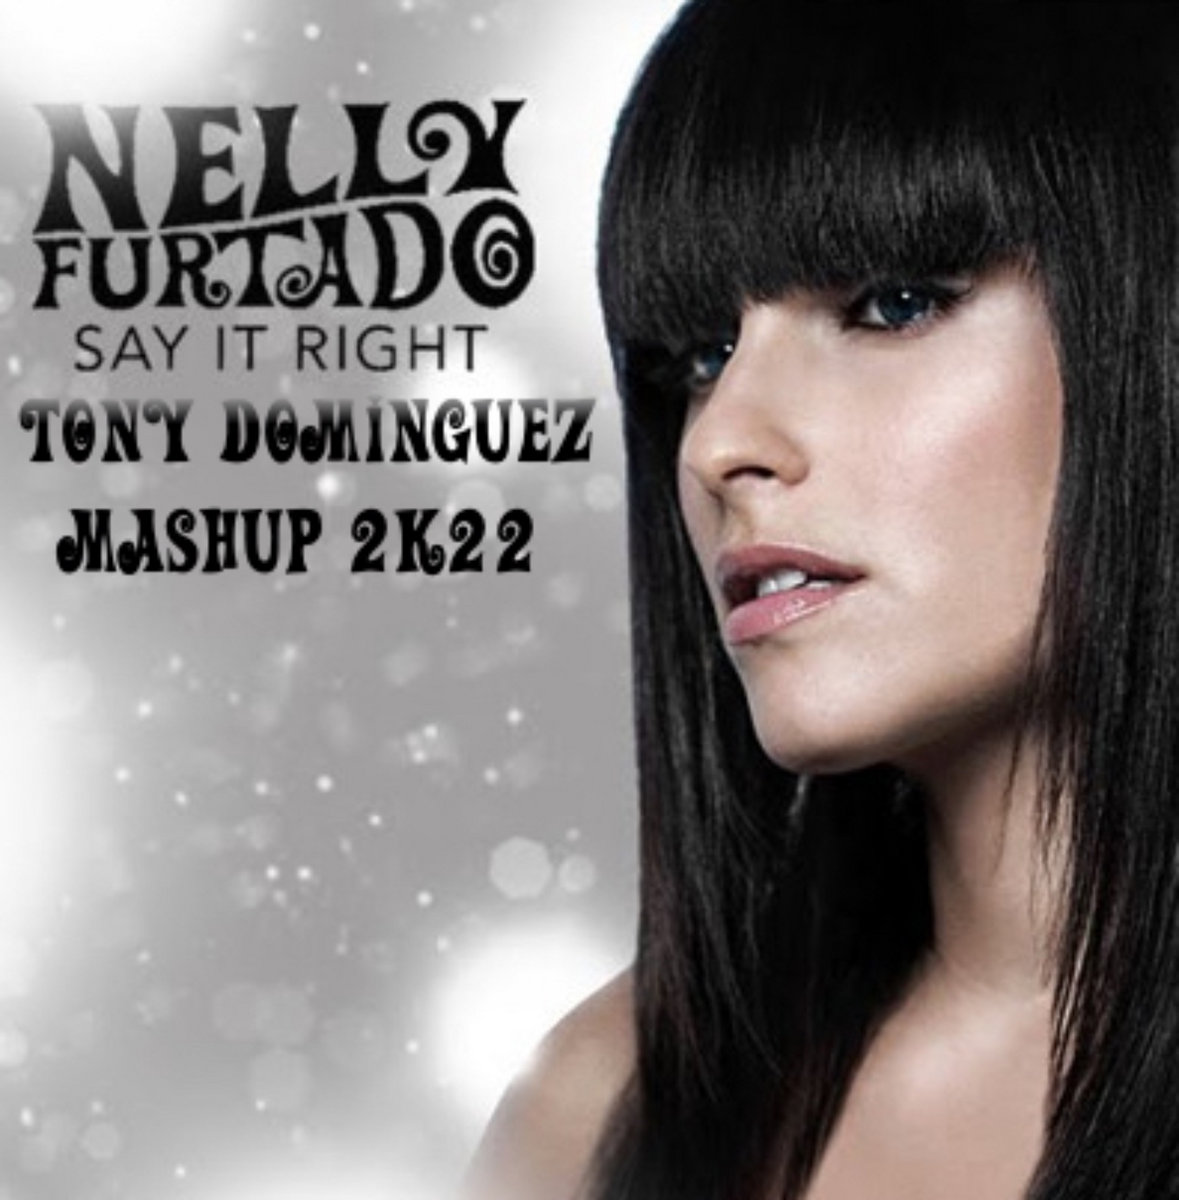 Nelly Furtado - Say It Right (Tony Dominguez Mashup 2k22) | Tony Dominguez